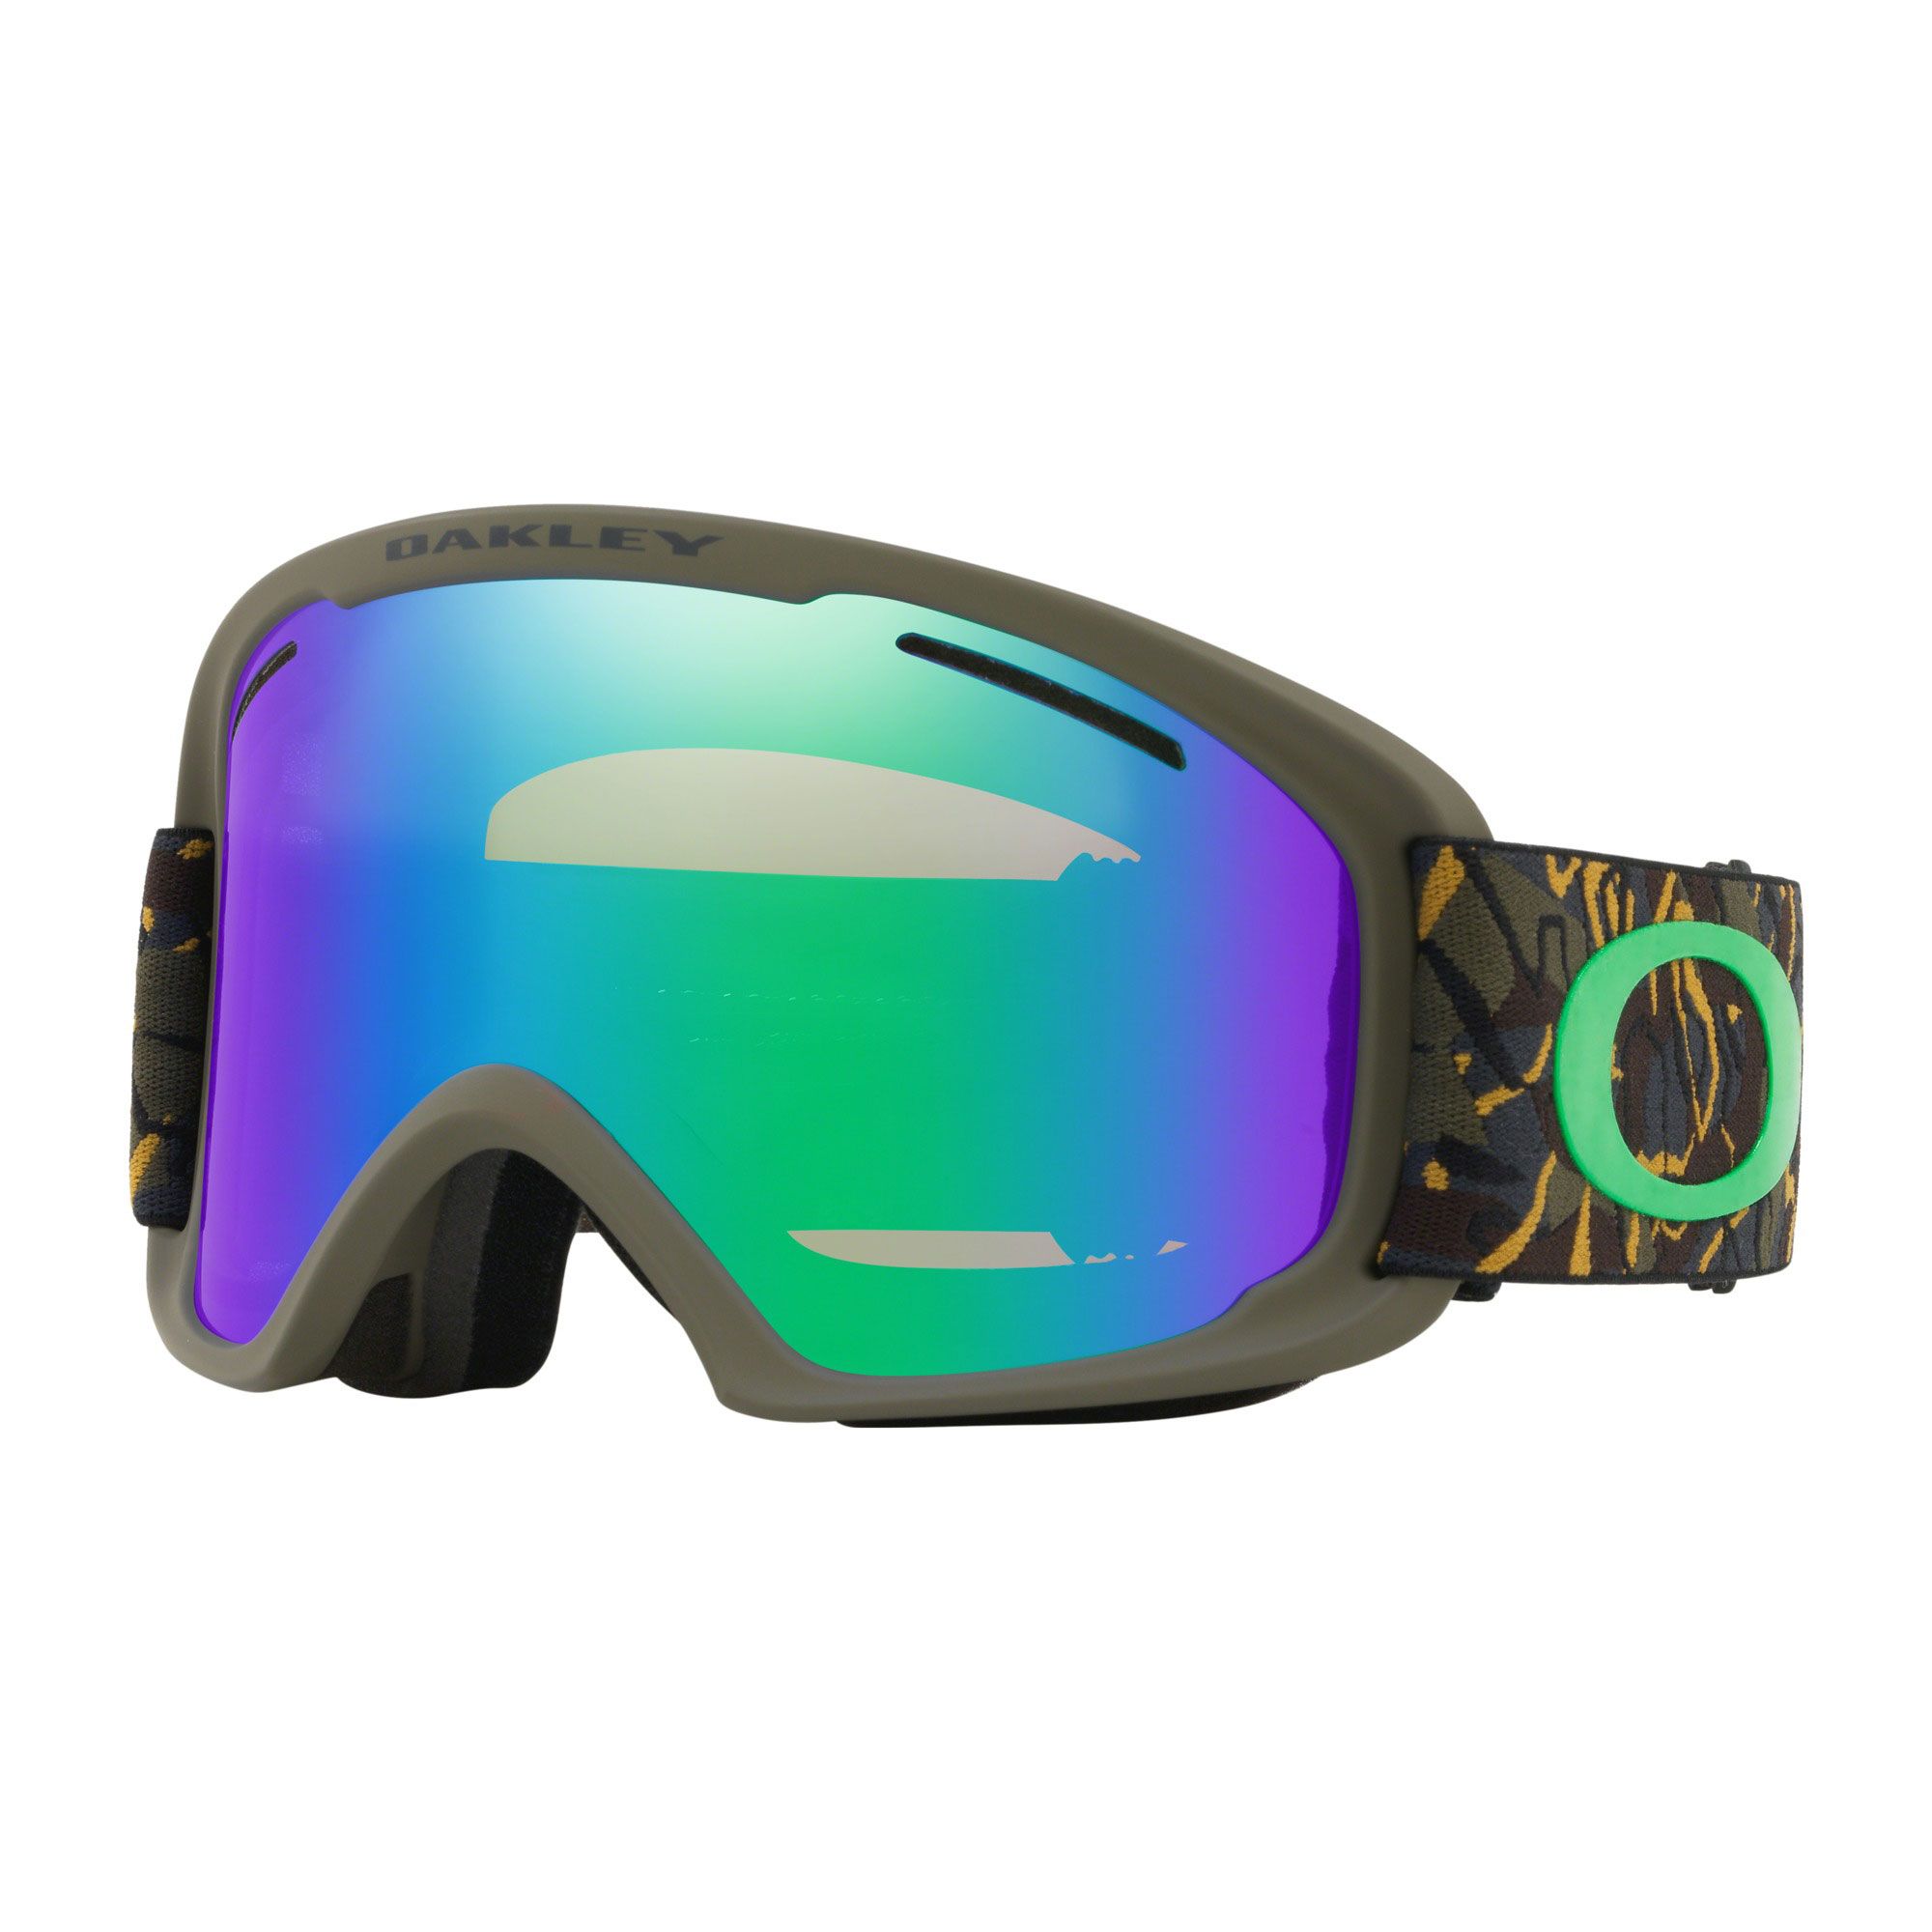 Masque de Ski O-frame 2.0 XL - Camo Vine Jungle - Prizm Jade Iridium + Persimmon